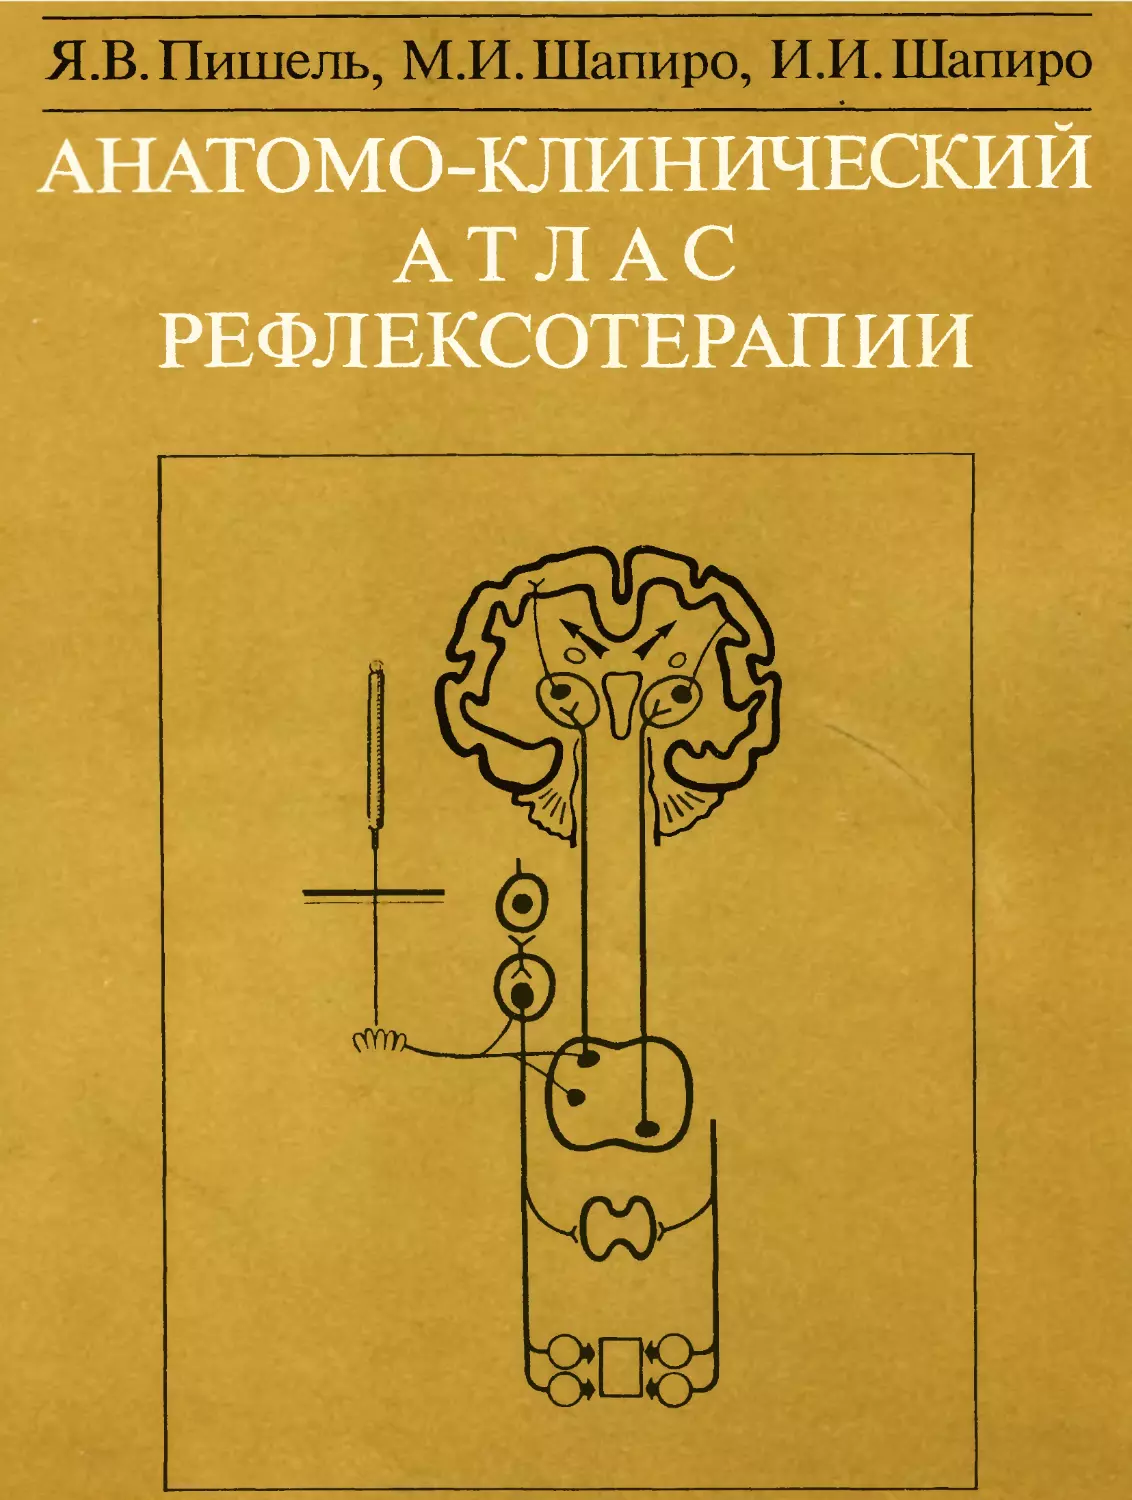 Анатомо-клинический атлас рефлексотерапии. Пишель Я.В., Шапиро И.И., Шапиро М.И. М.: Медицина, 1989. 144 с. ISBN 5-225-01652-9